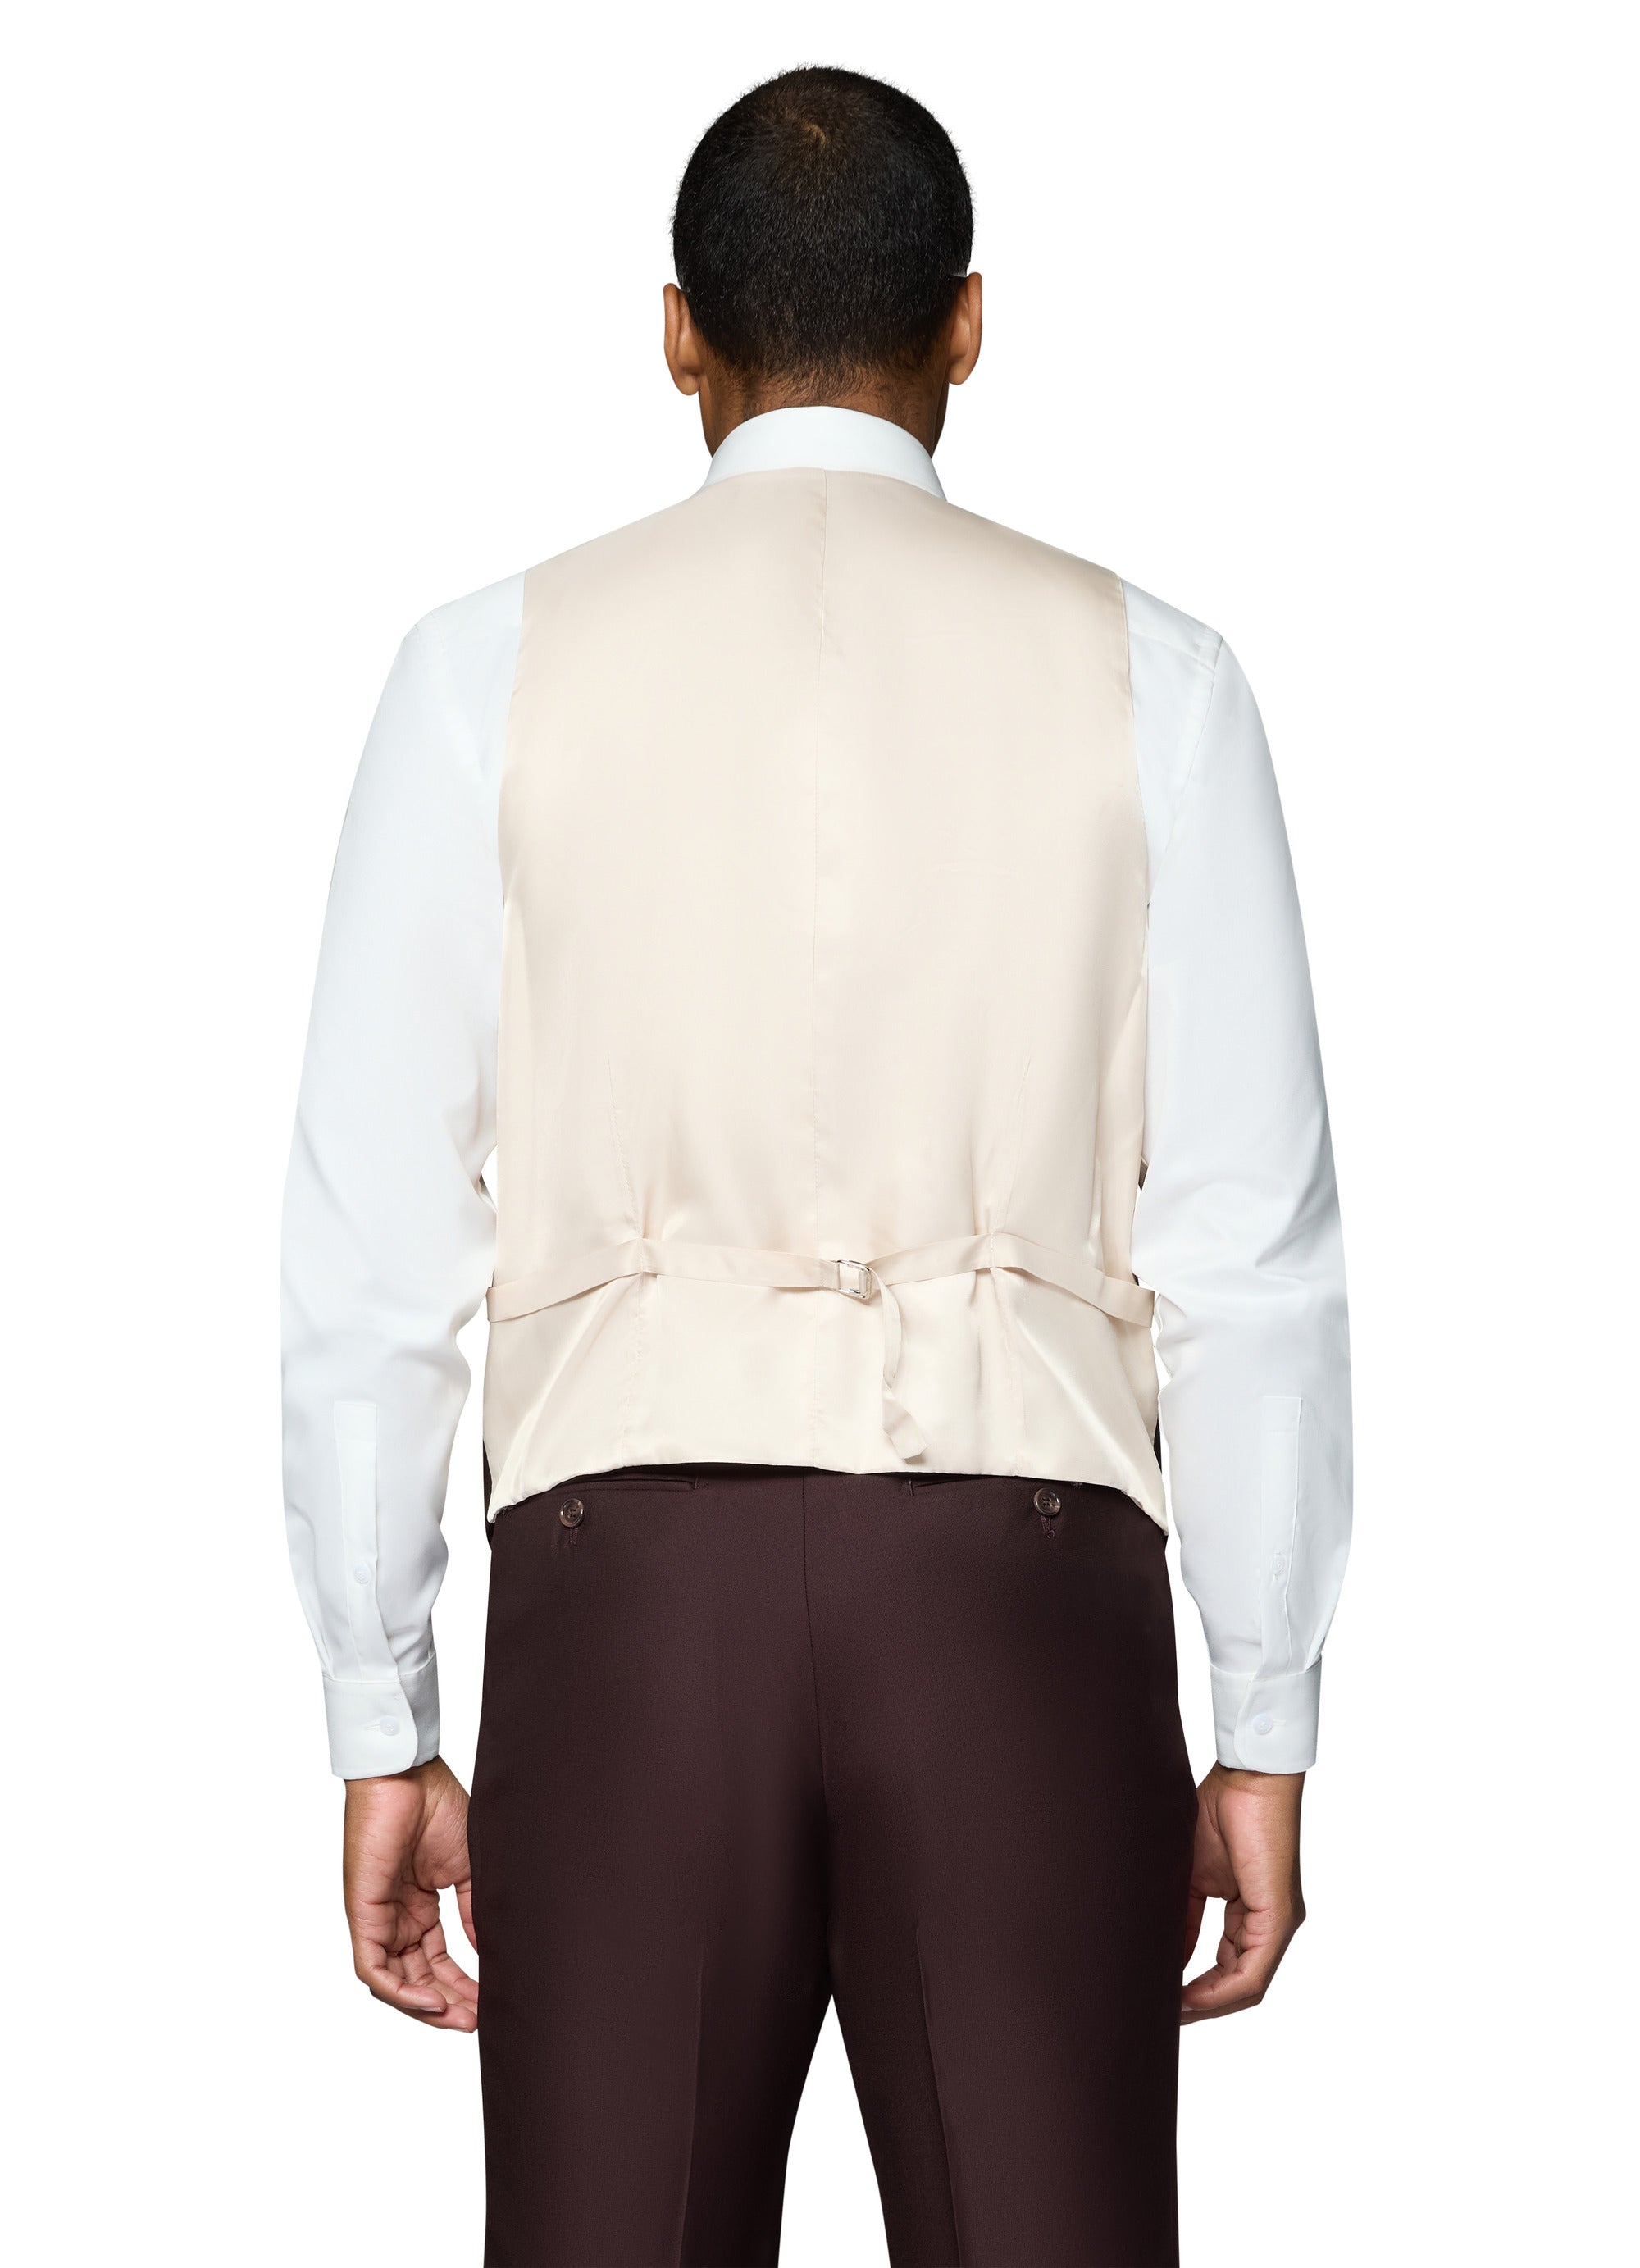 Berragamo Essex Elegant - Faille Wool Solid Suit - Burgundy